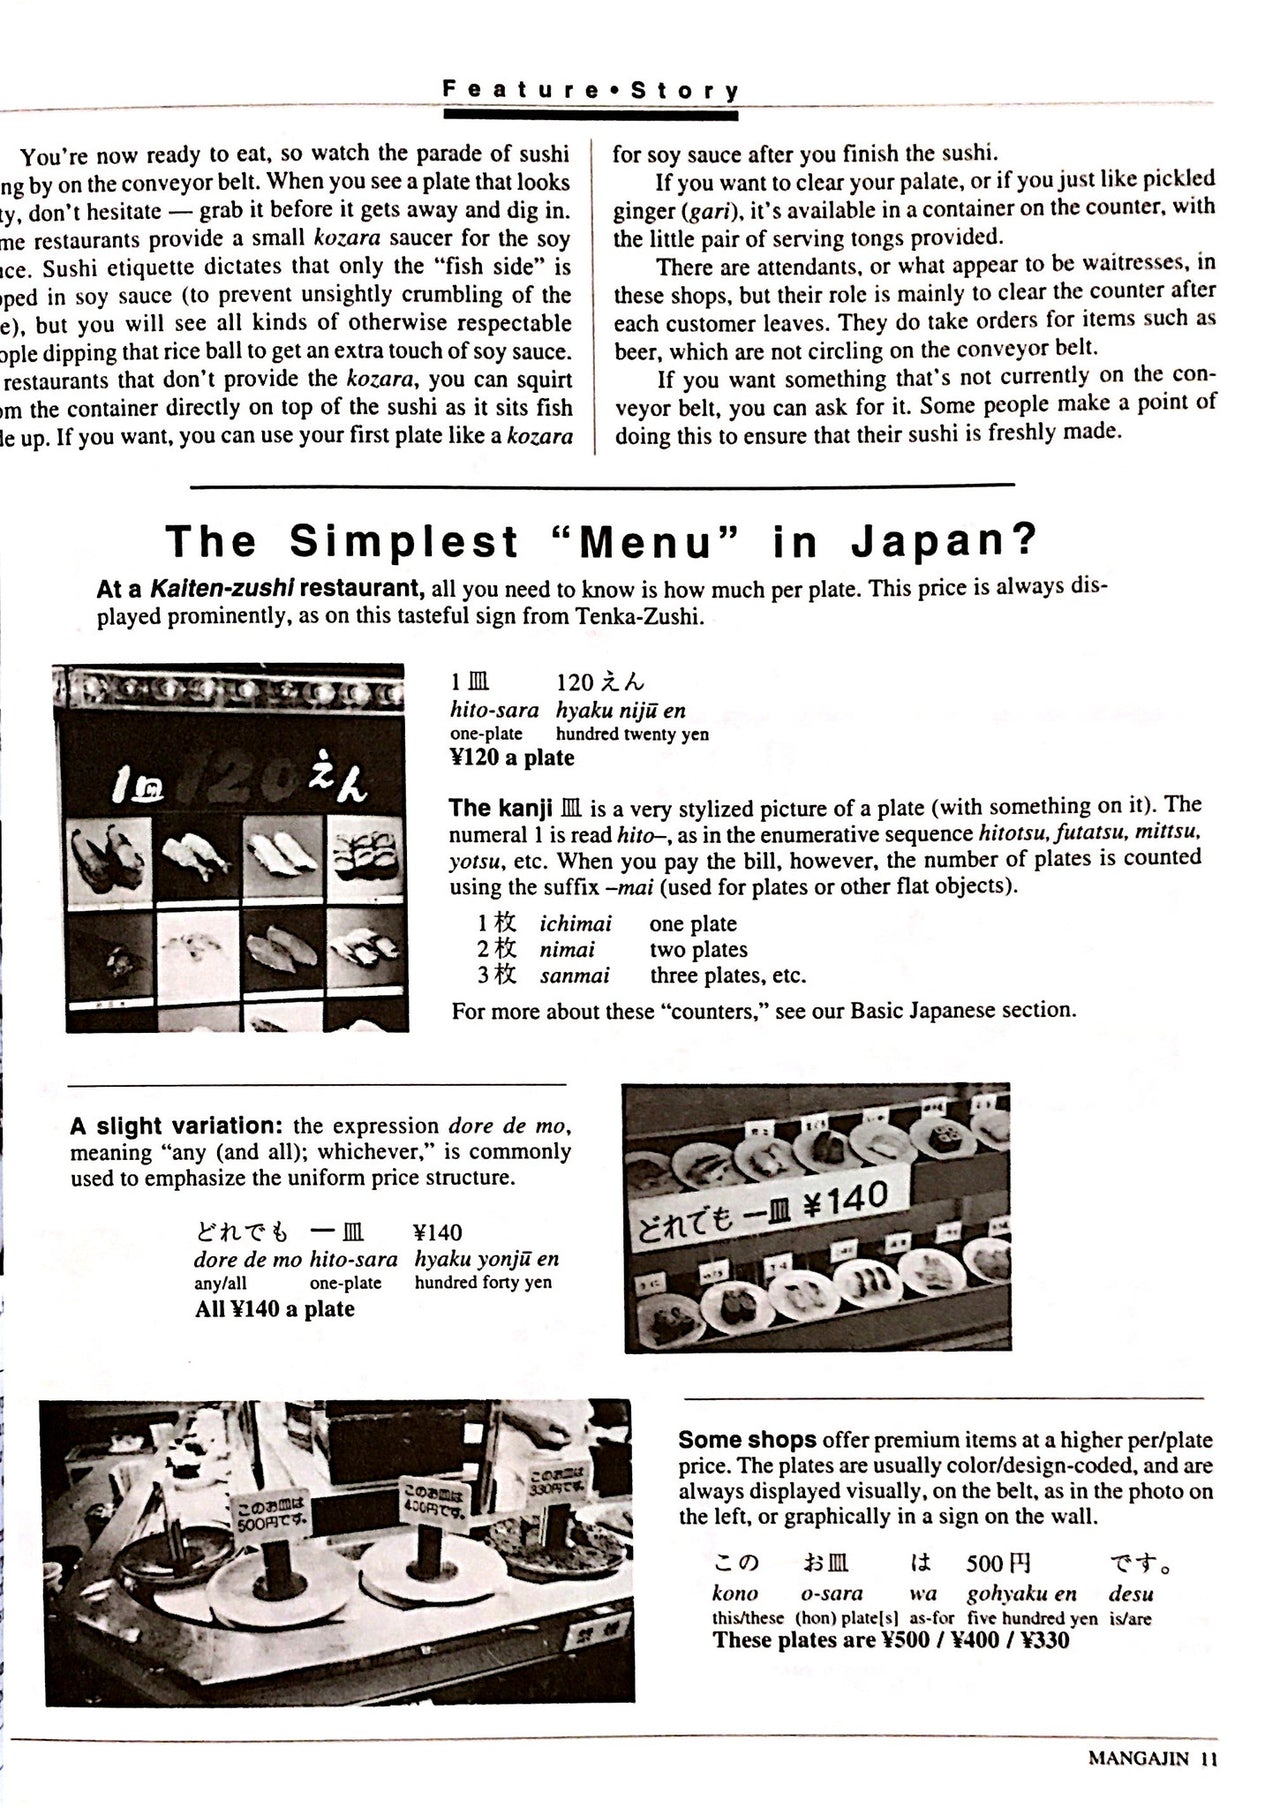 Mangajin 47 - The Japan Shop